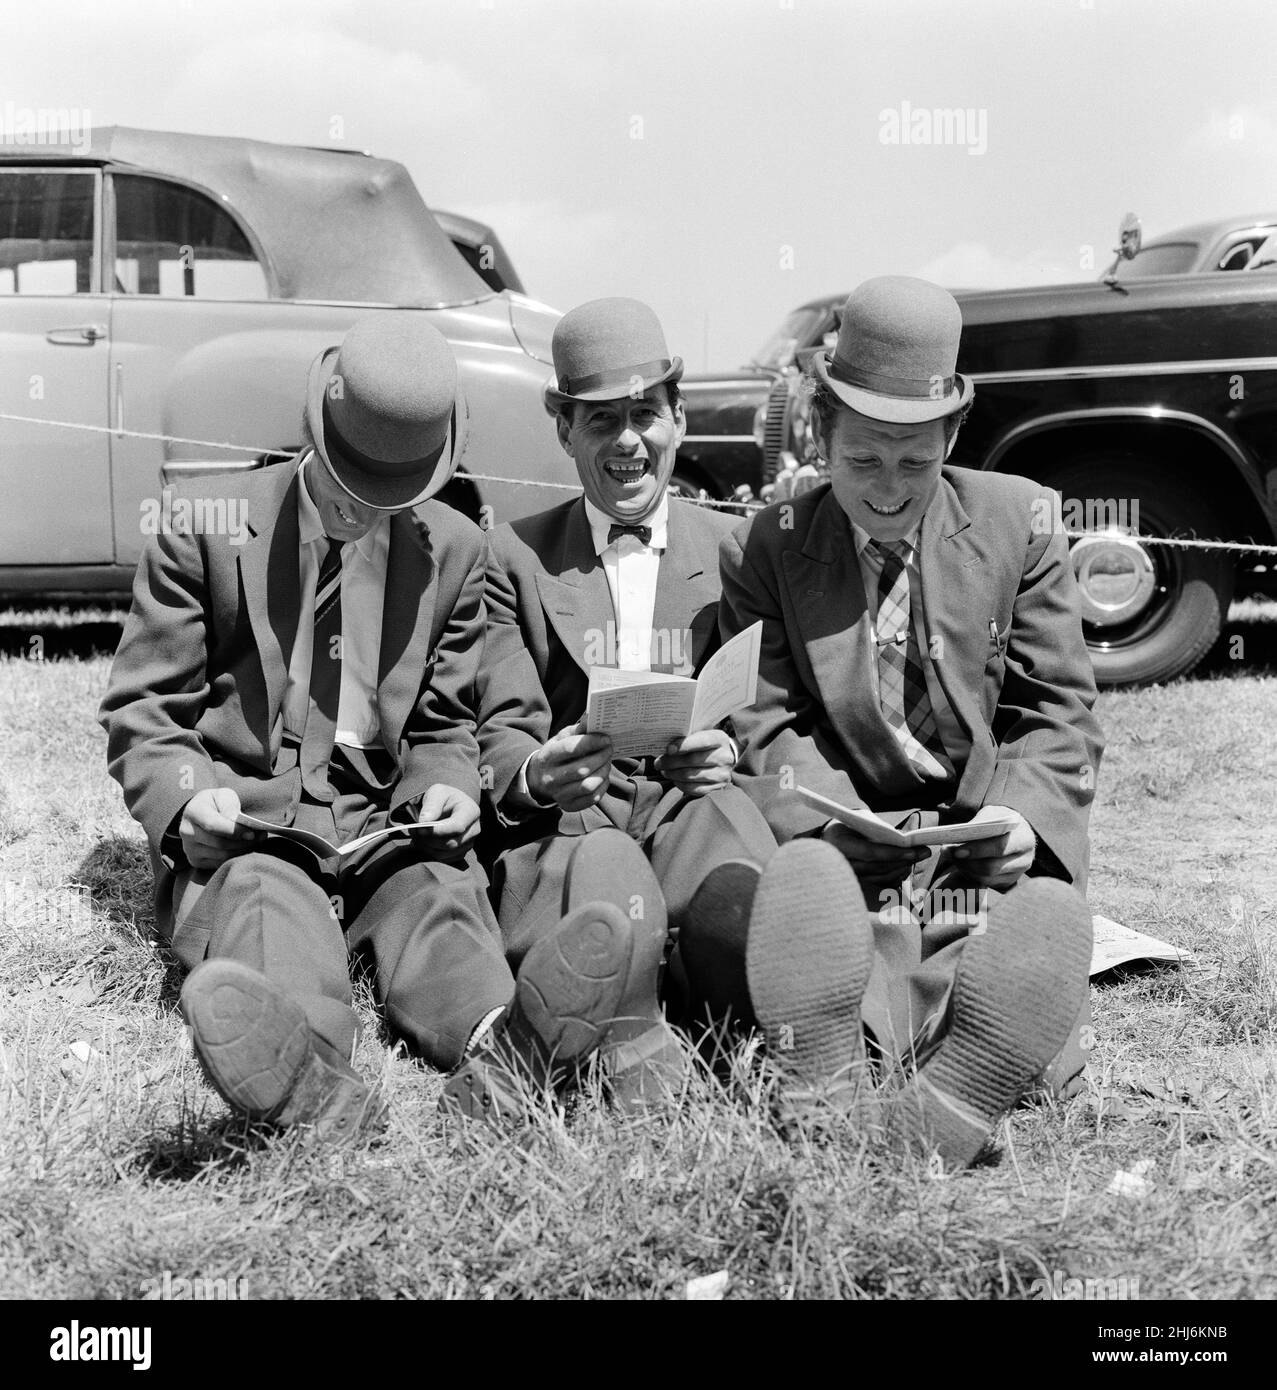 Derby Day à Epsom.Sur la photo, trois lads de Newmarket assis sur la forme d'étude de l'herbe.Tous portent des chapeaux qu'ils décrivent comme des « hariteuses dures », ils sont semblables aux baleines mais ont une visière courbée.3rd juin 1959. Banque D'Images